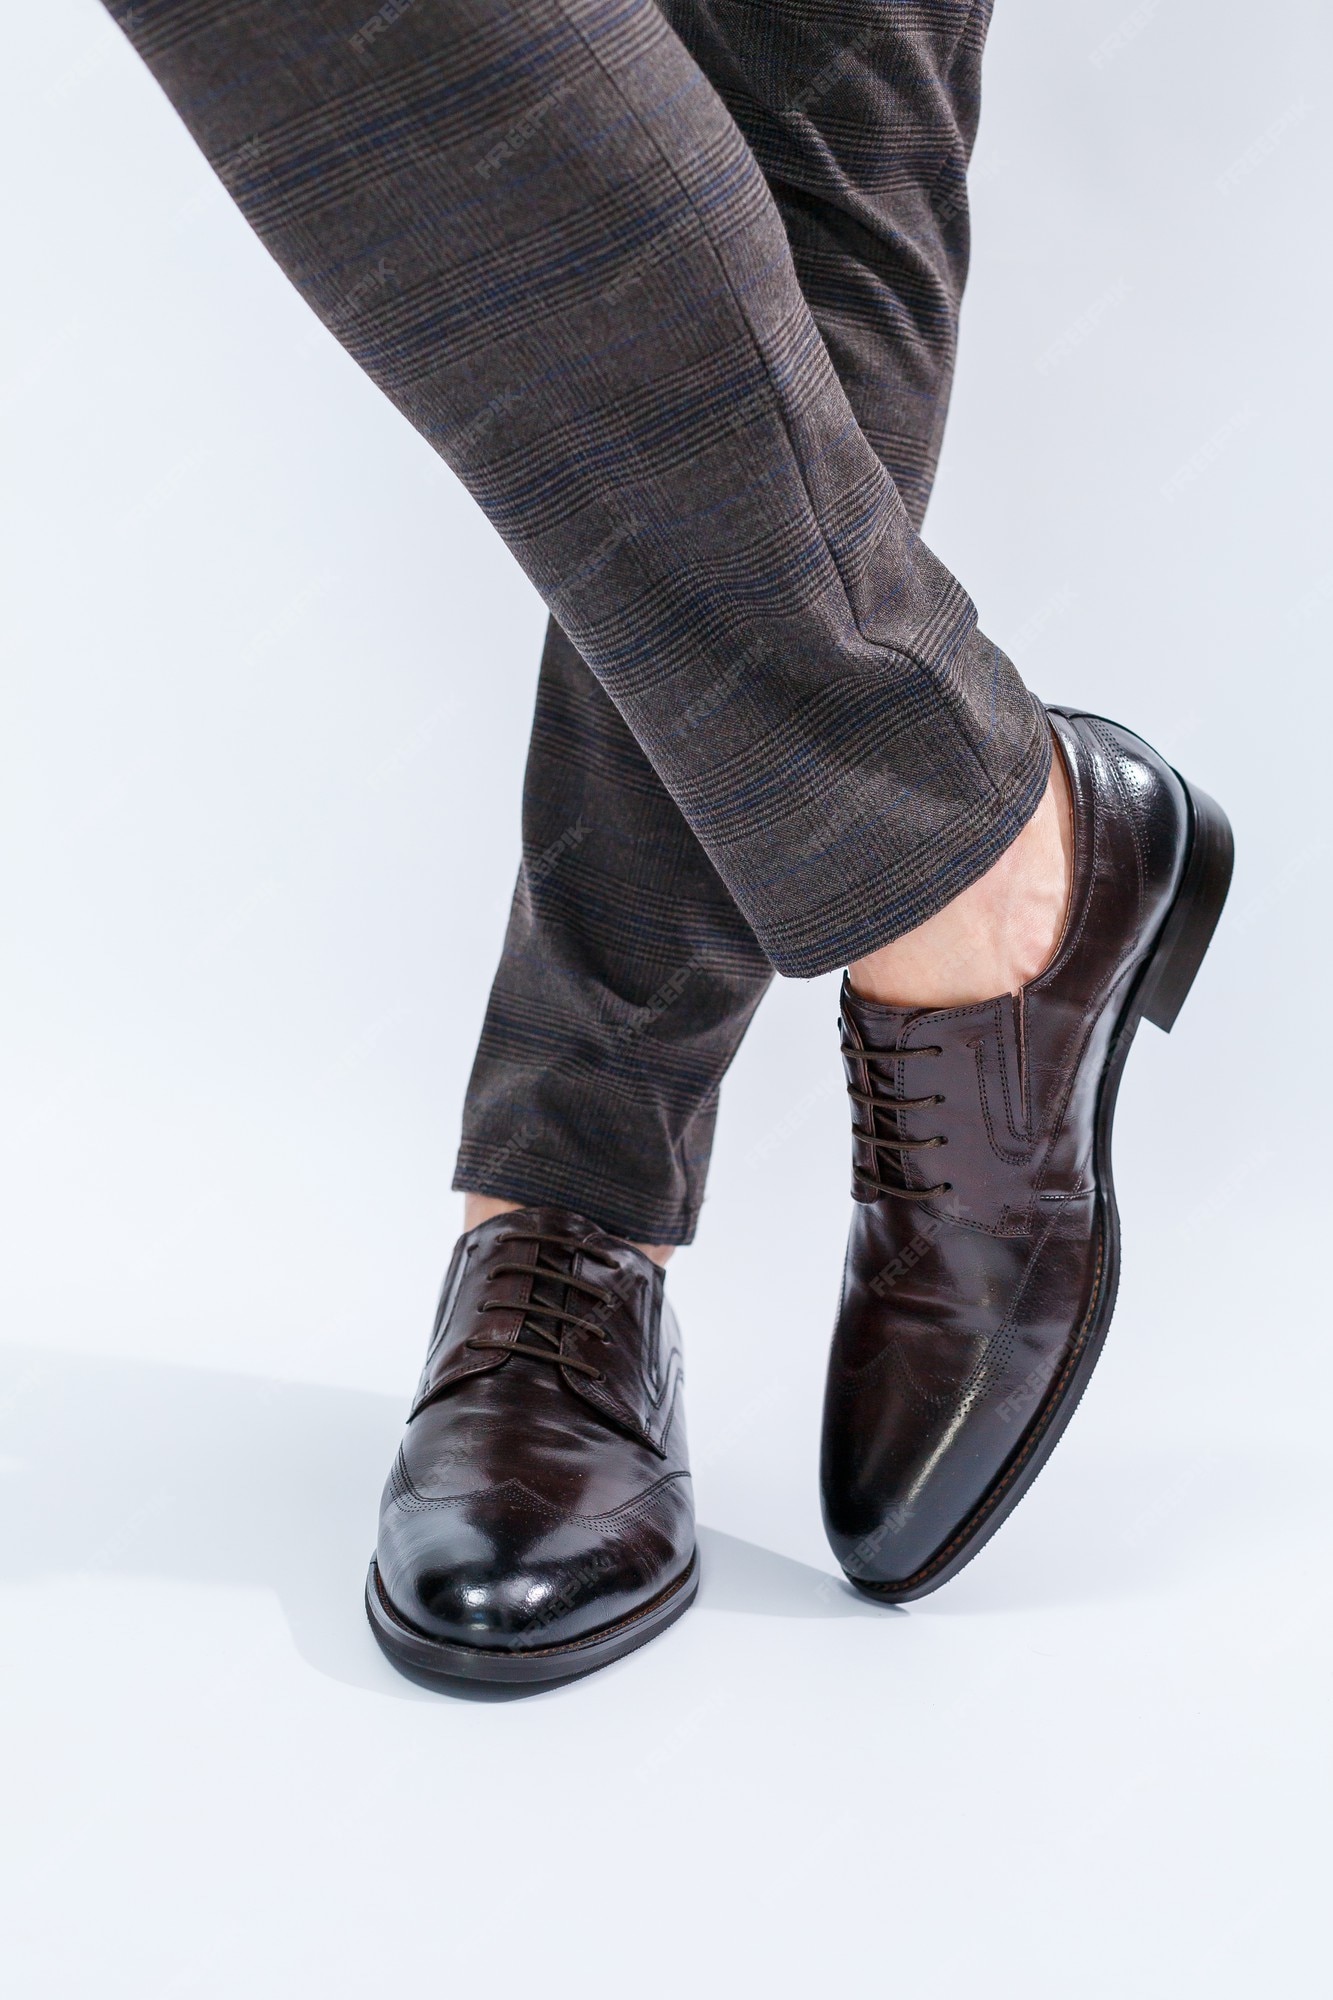 Zapatos clásicos de piel natural, de hombre debajo de un traje clásico. | Foto Premium